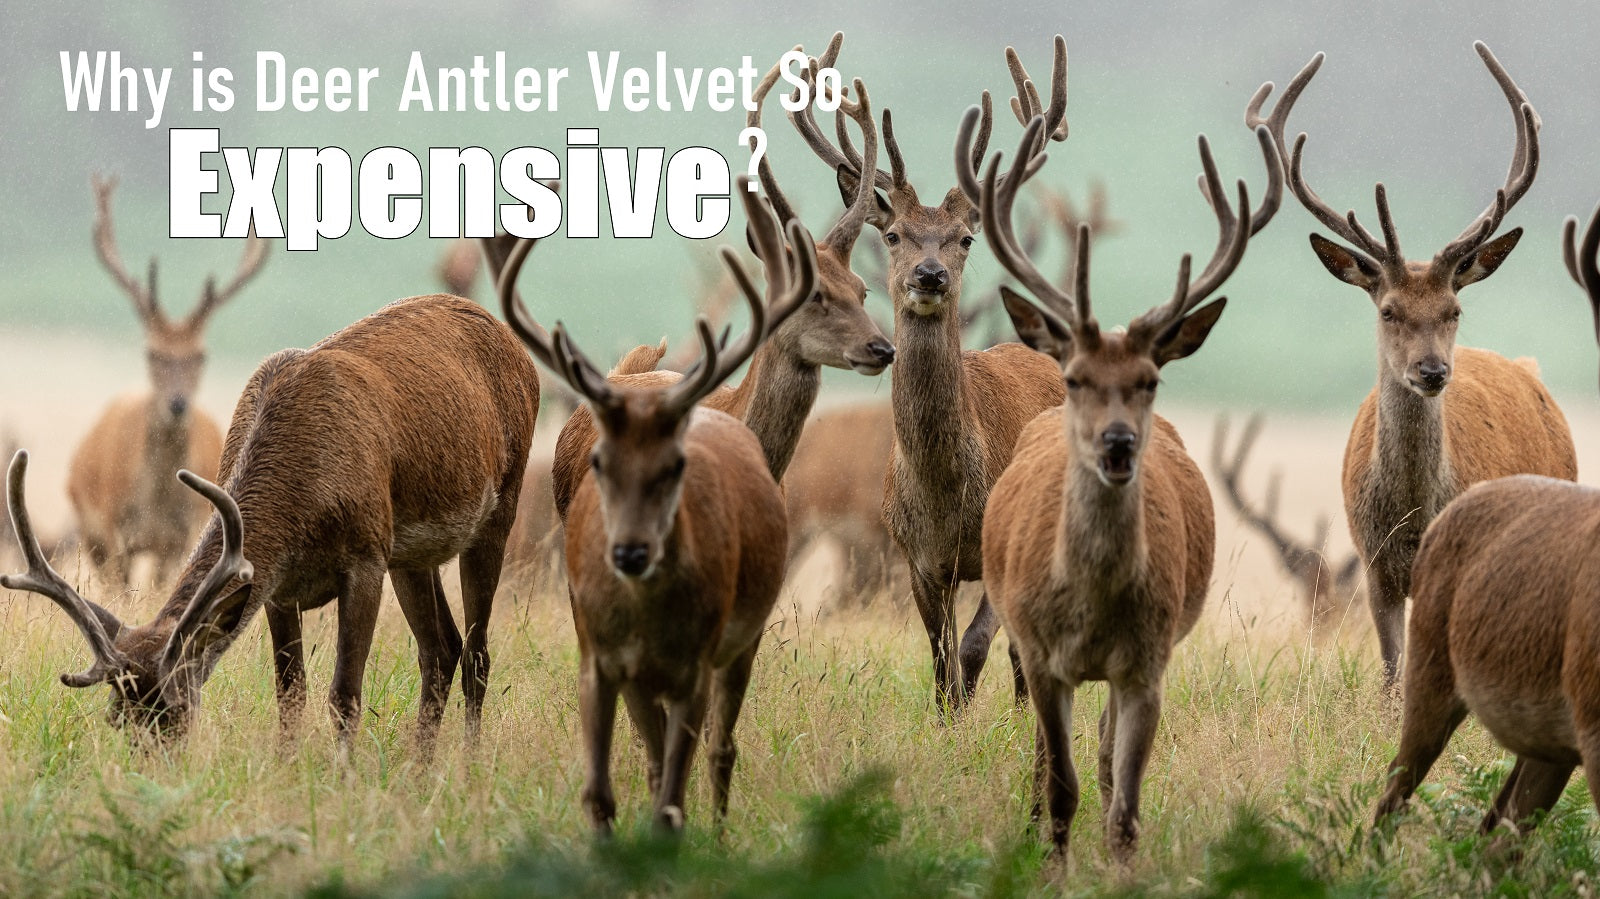 Why is Deer Antler Velvet So Expensive? – Antler Farms